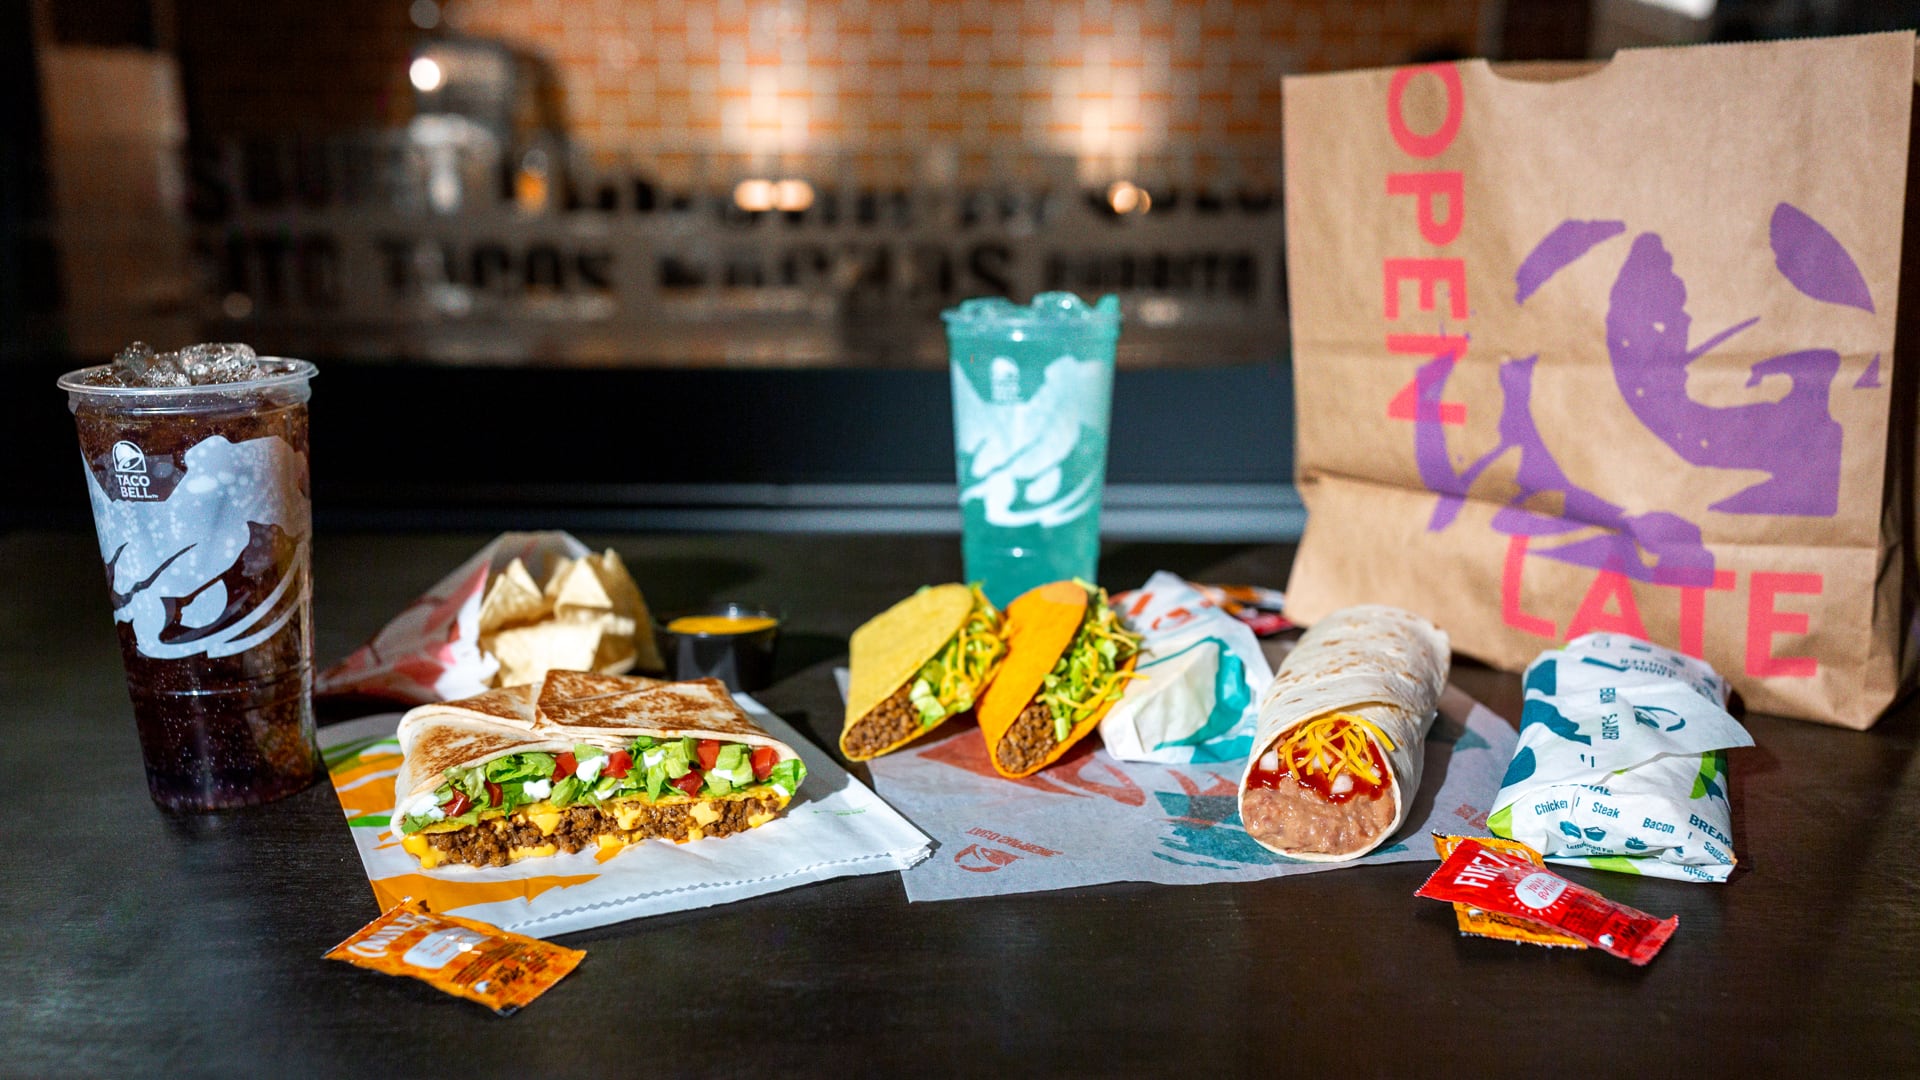 An arrangement of a Taco Bell Order including 1 Crunchy Taco, 1 Doritos® Loco Taco, 1 burrito, a couple of wrapped soft tacos and 1 Crunchwrap Supreme®.